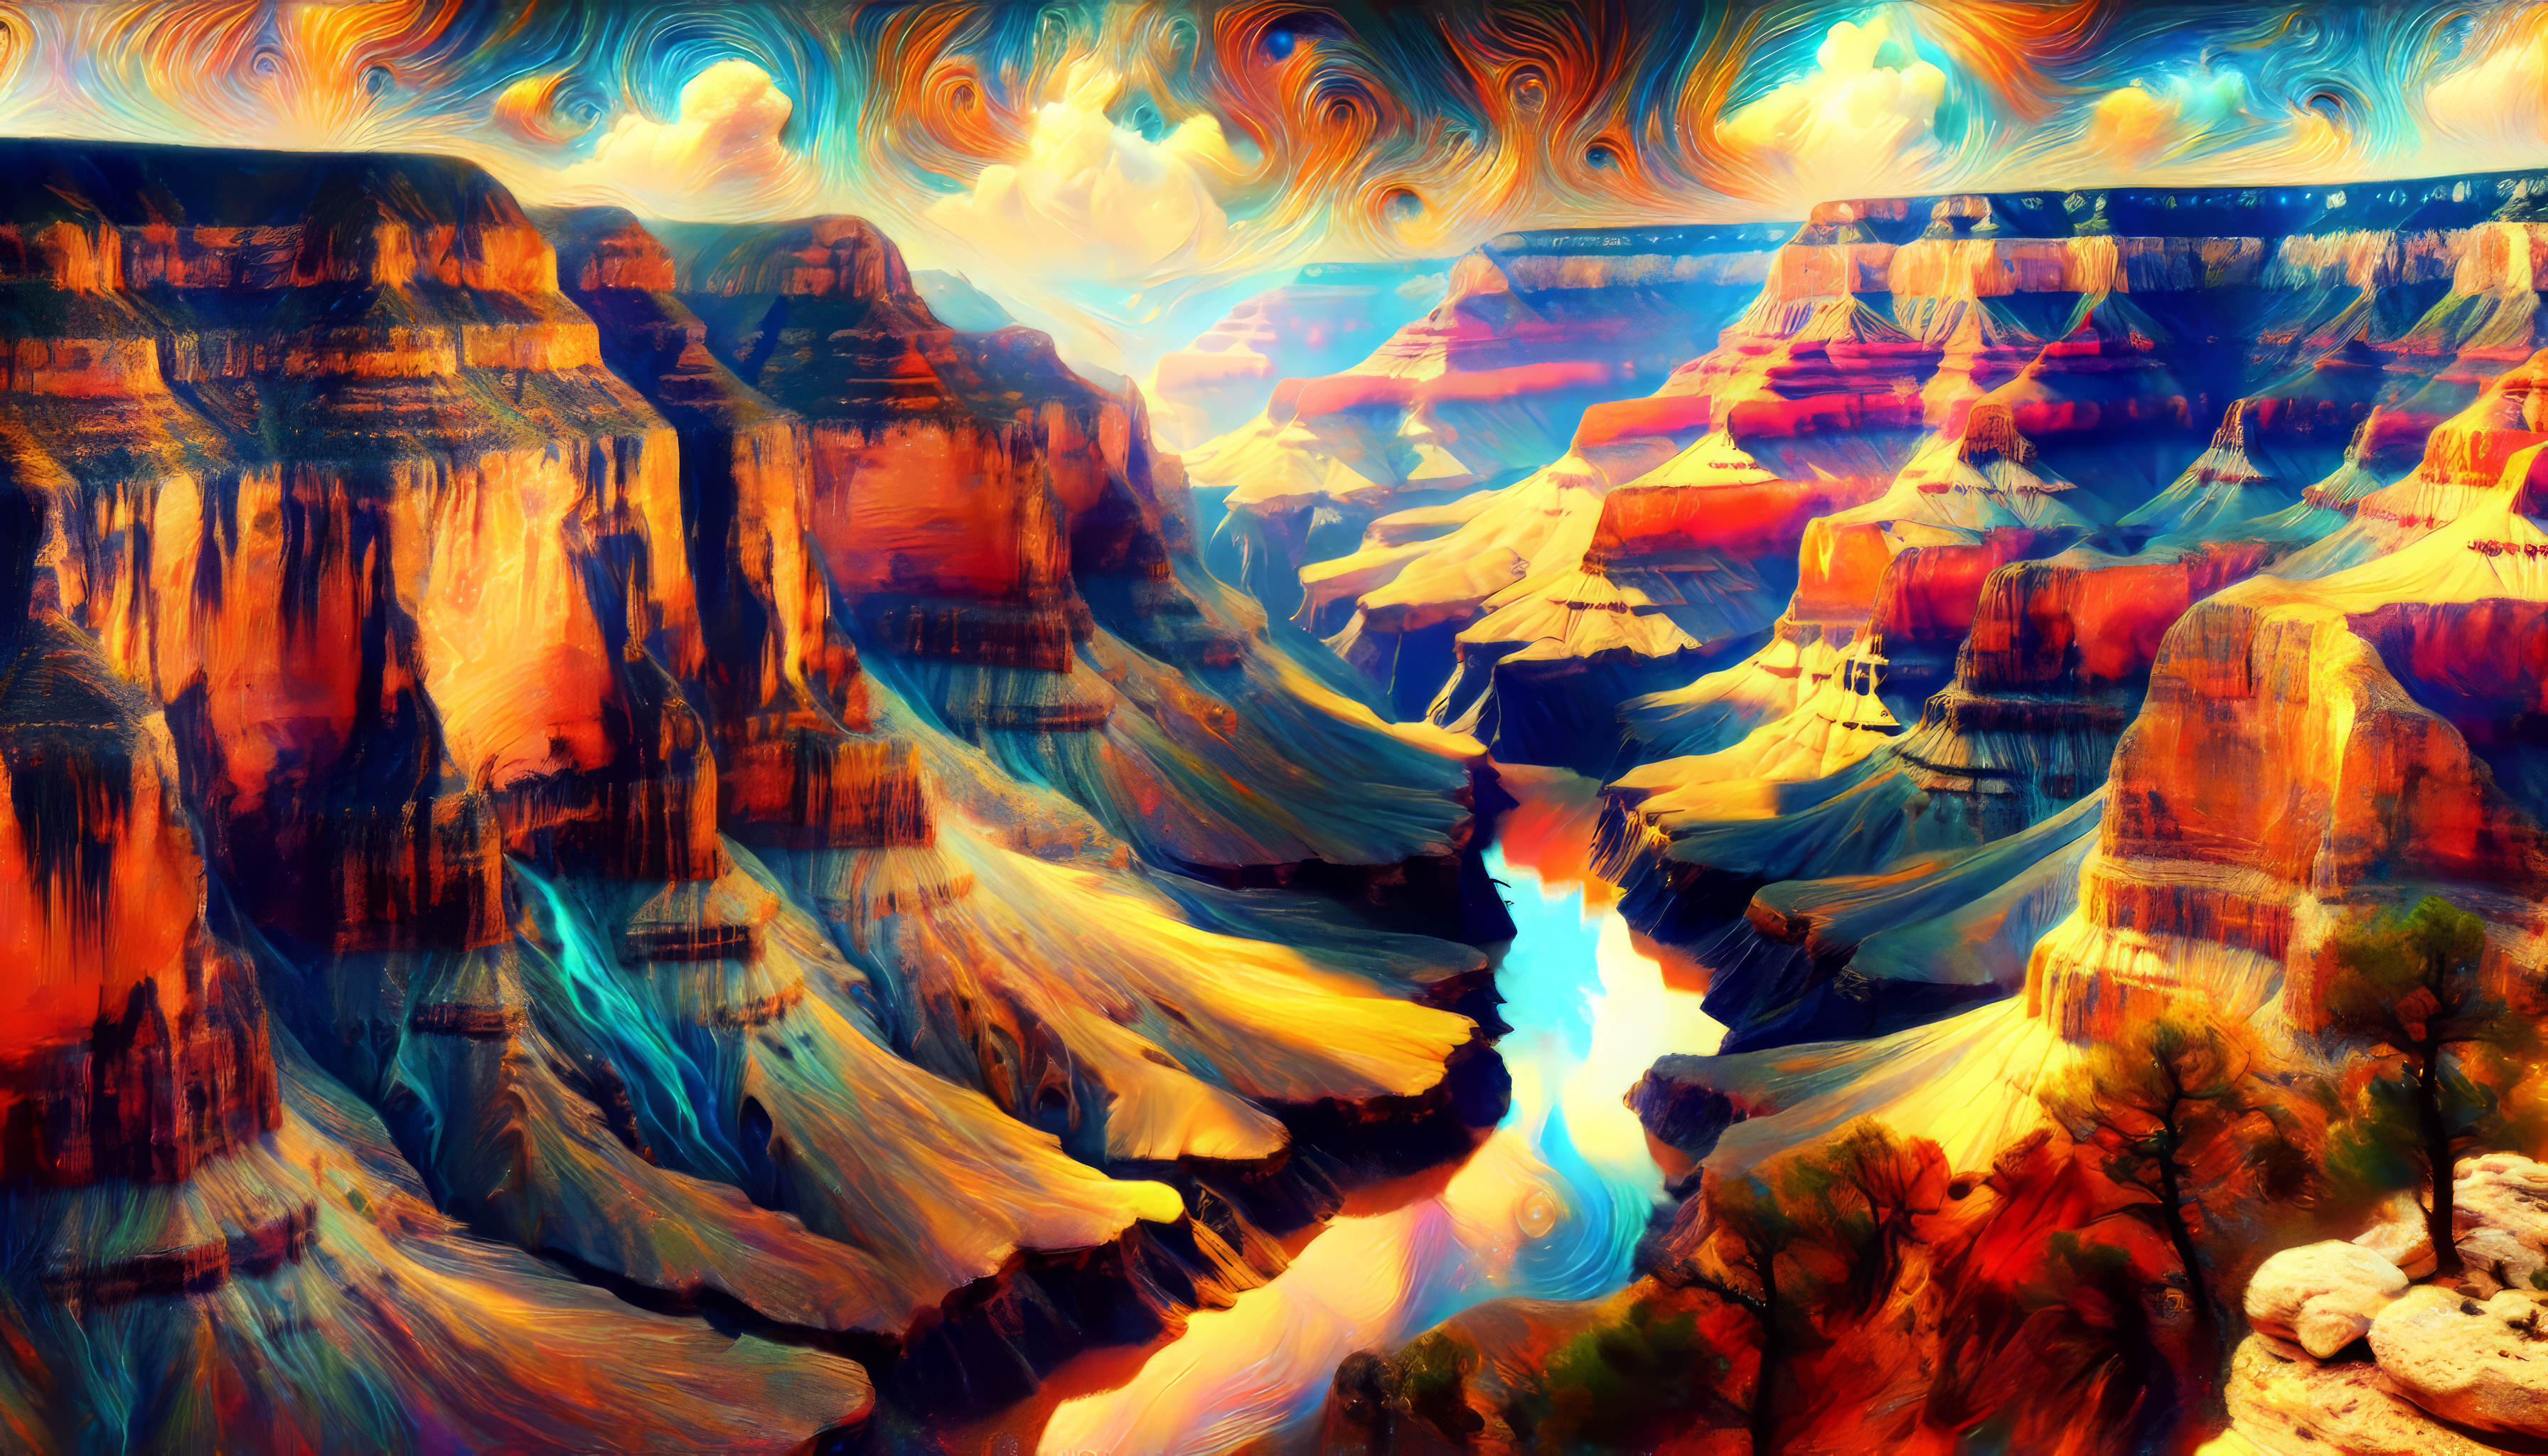 Wallpaper antelope canyon, nature, usa desktop wallpaper, hd image,  picture, background, 912566 | wallpapersmug